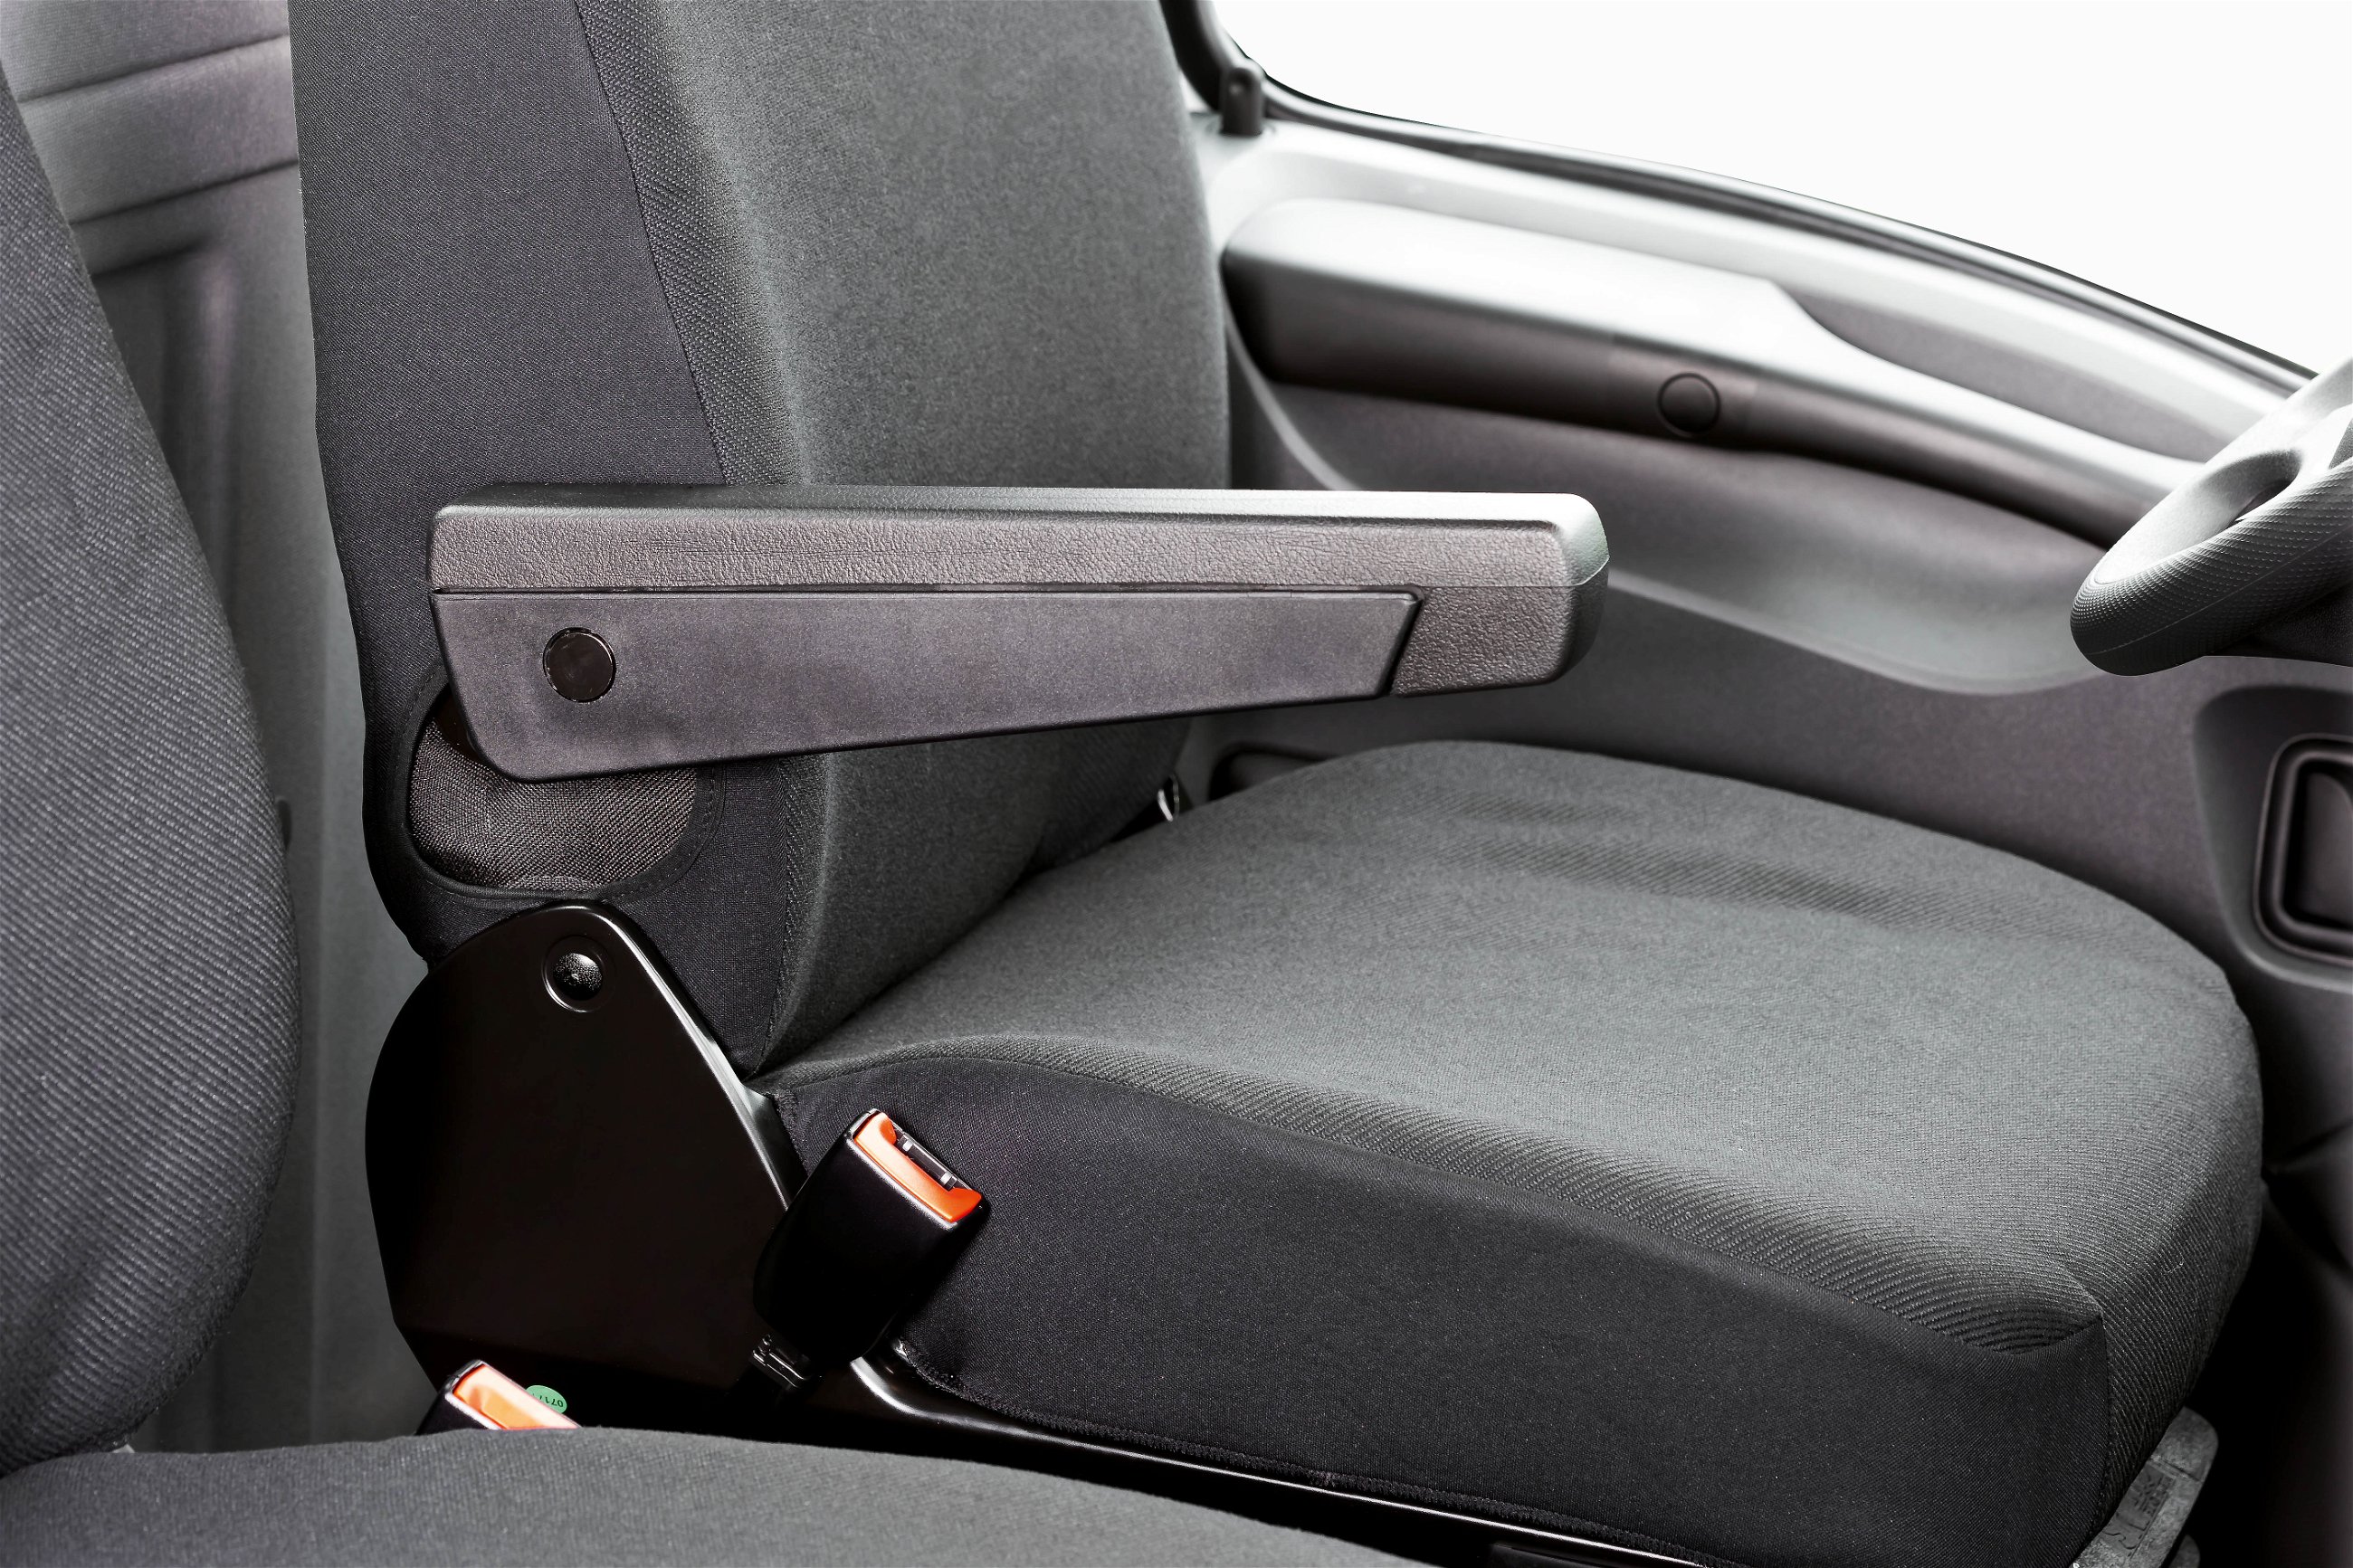 Housse de siège Transporter en tissu pour Iveco Daily IV, siège simple et double